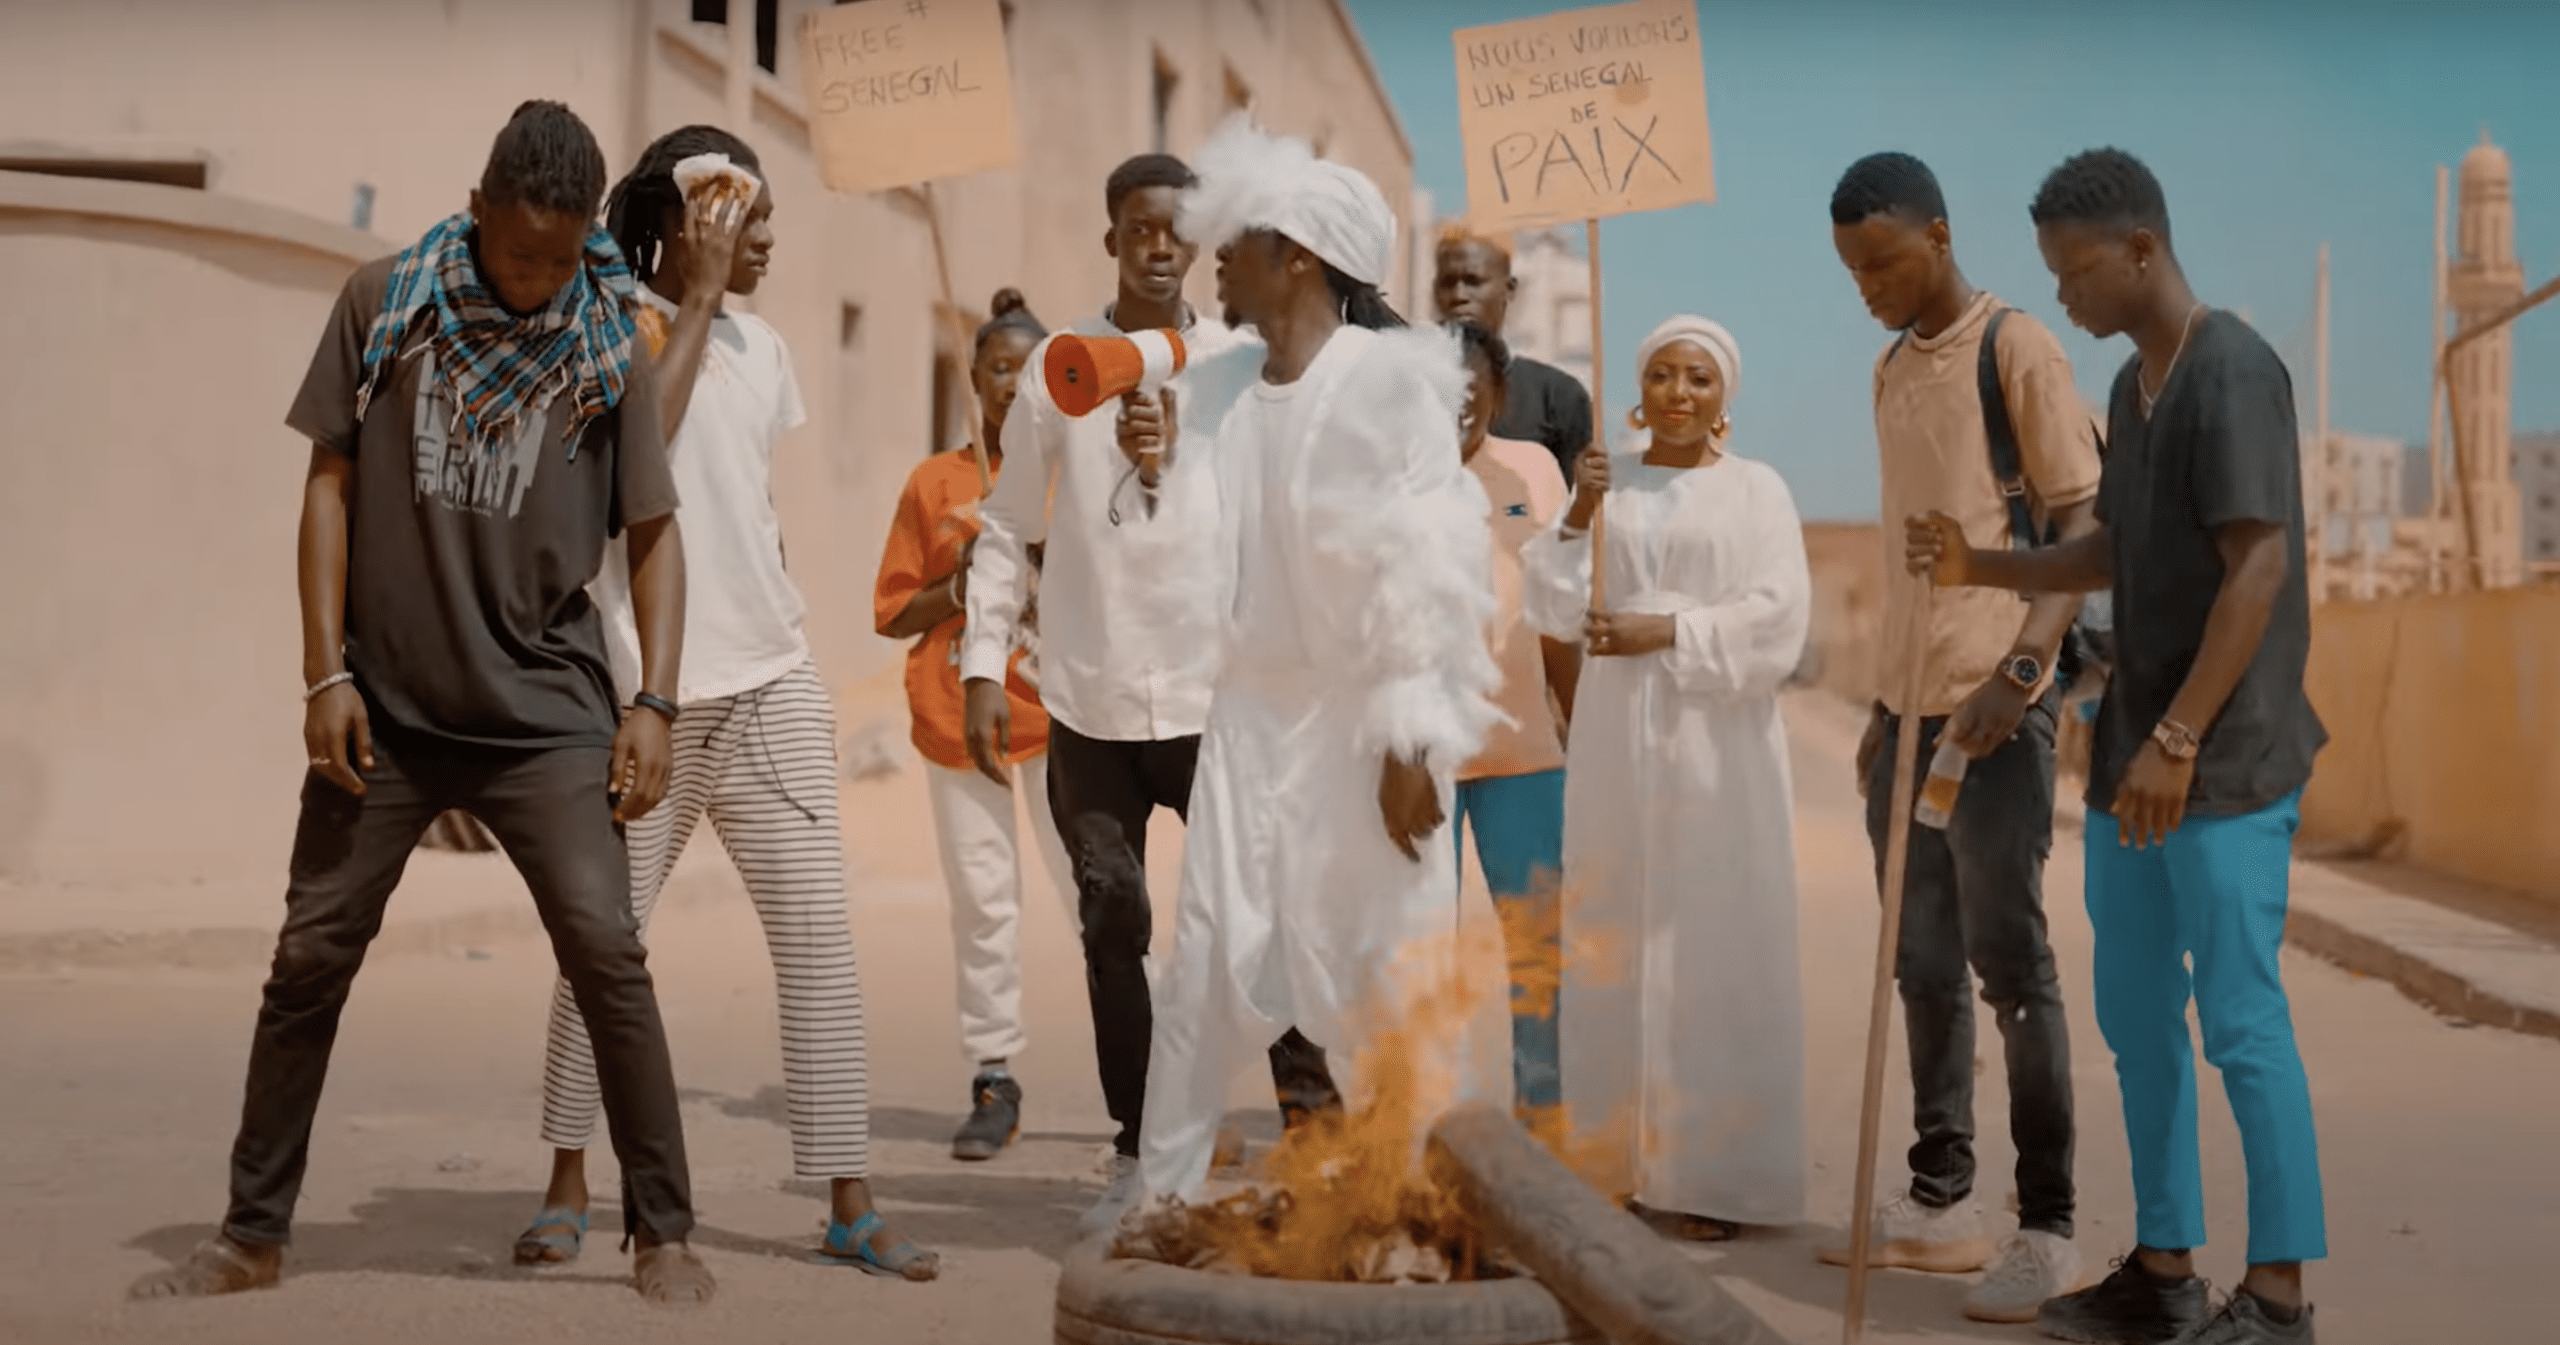 Situation tendue : L'artiste Ame bongo appelle à cultiver la paix à travers "Jamm la paix"